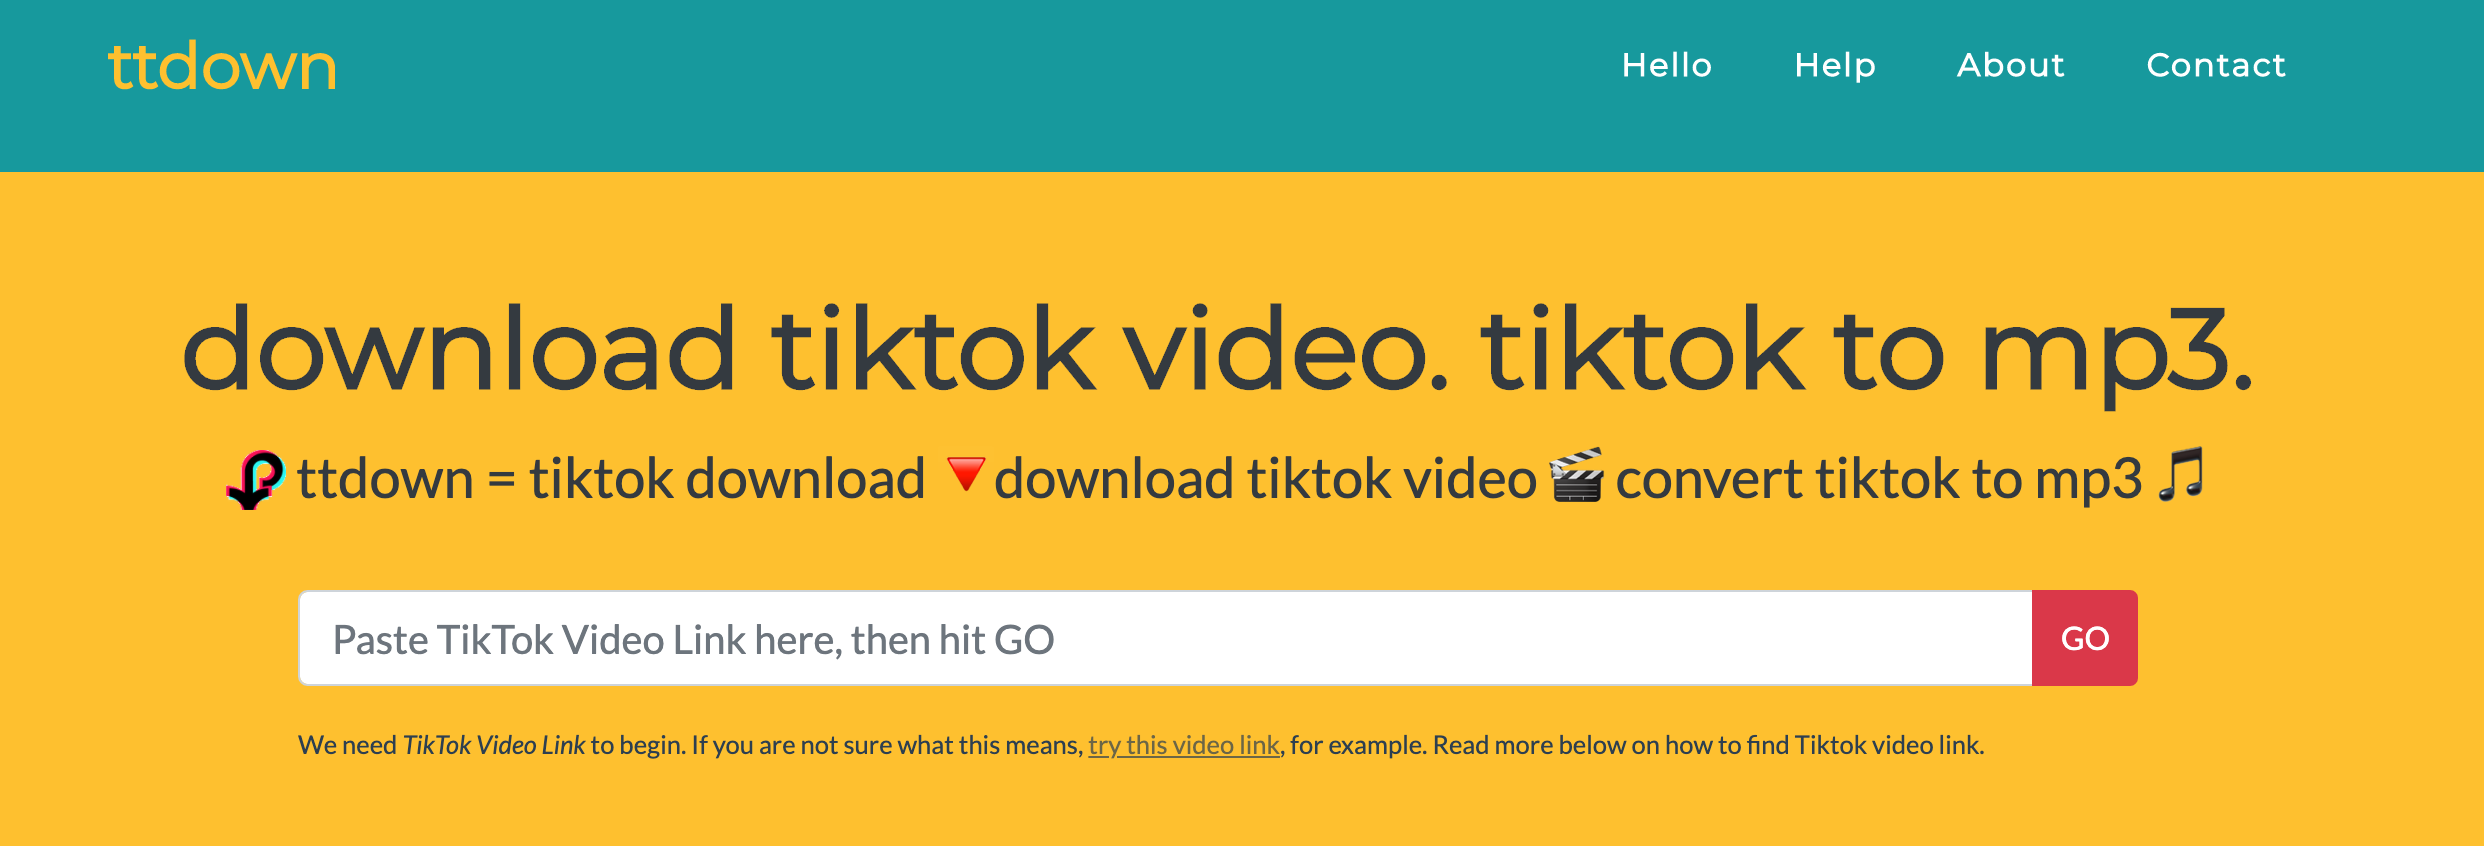 how to download tiktok audio easily leawo tutorial center